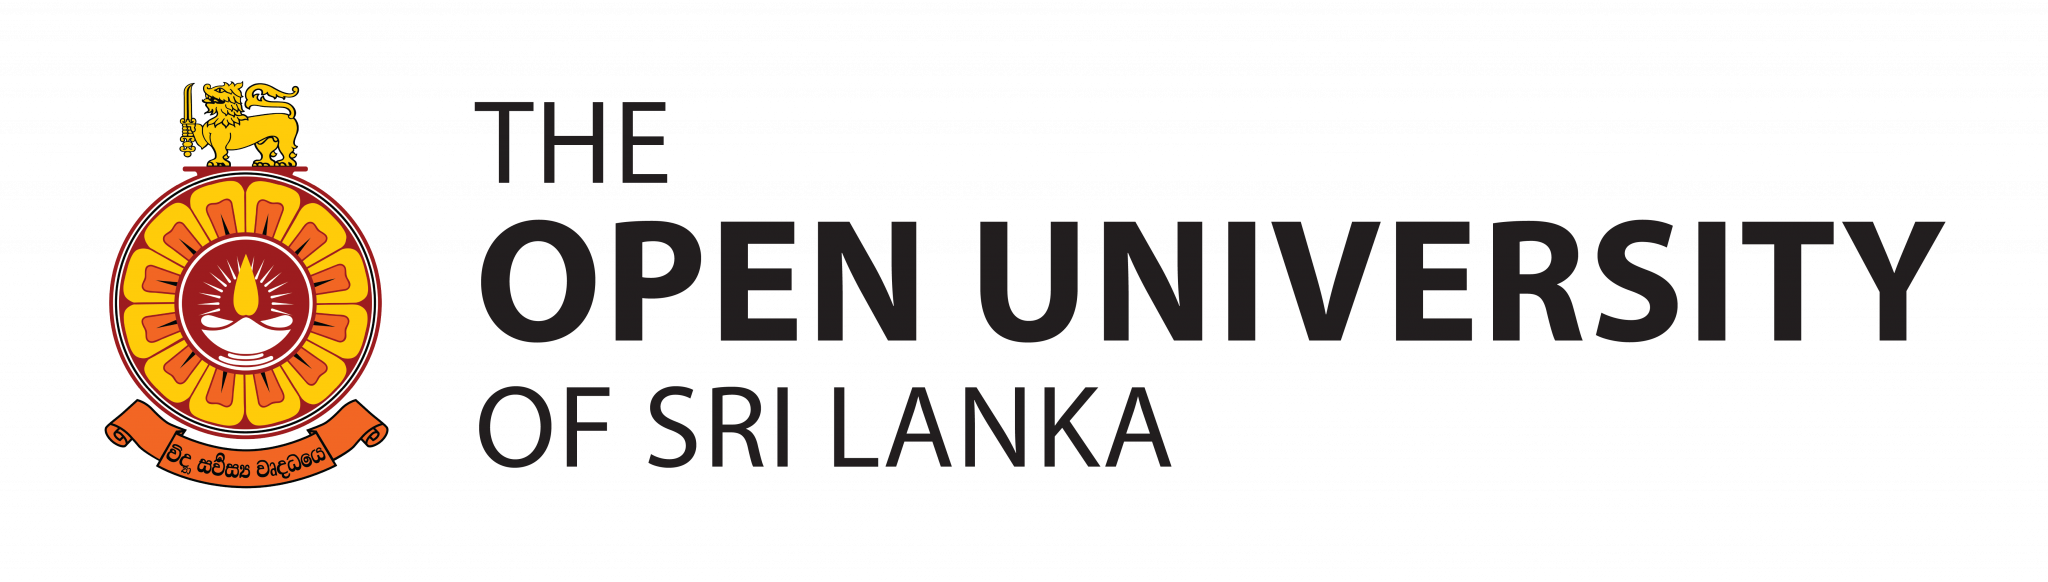 Open University Vacancies - Operation Assistant